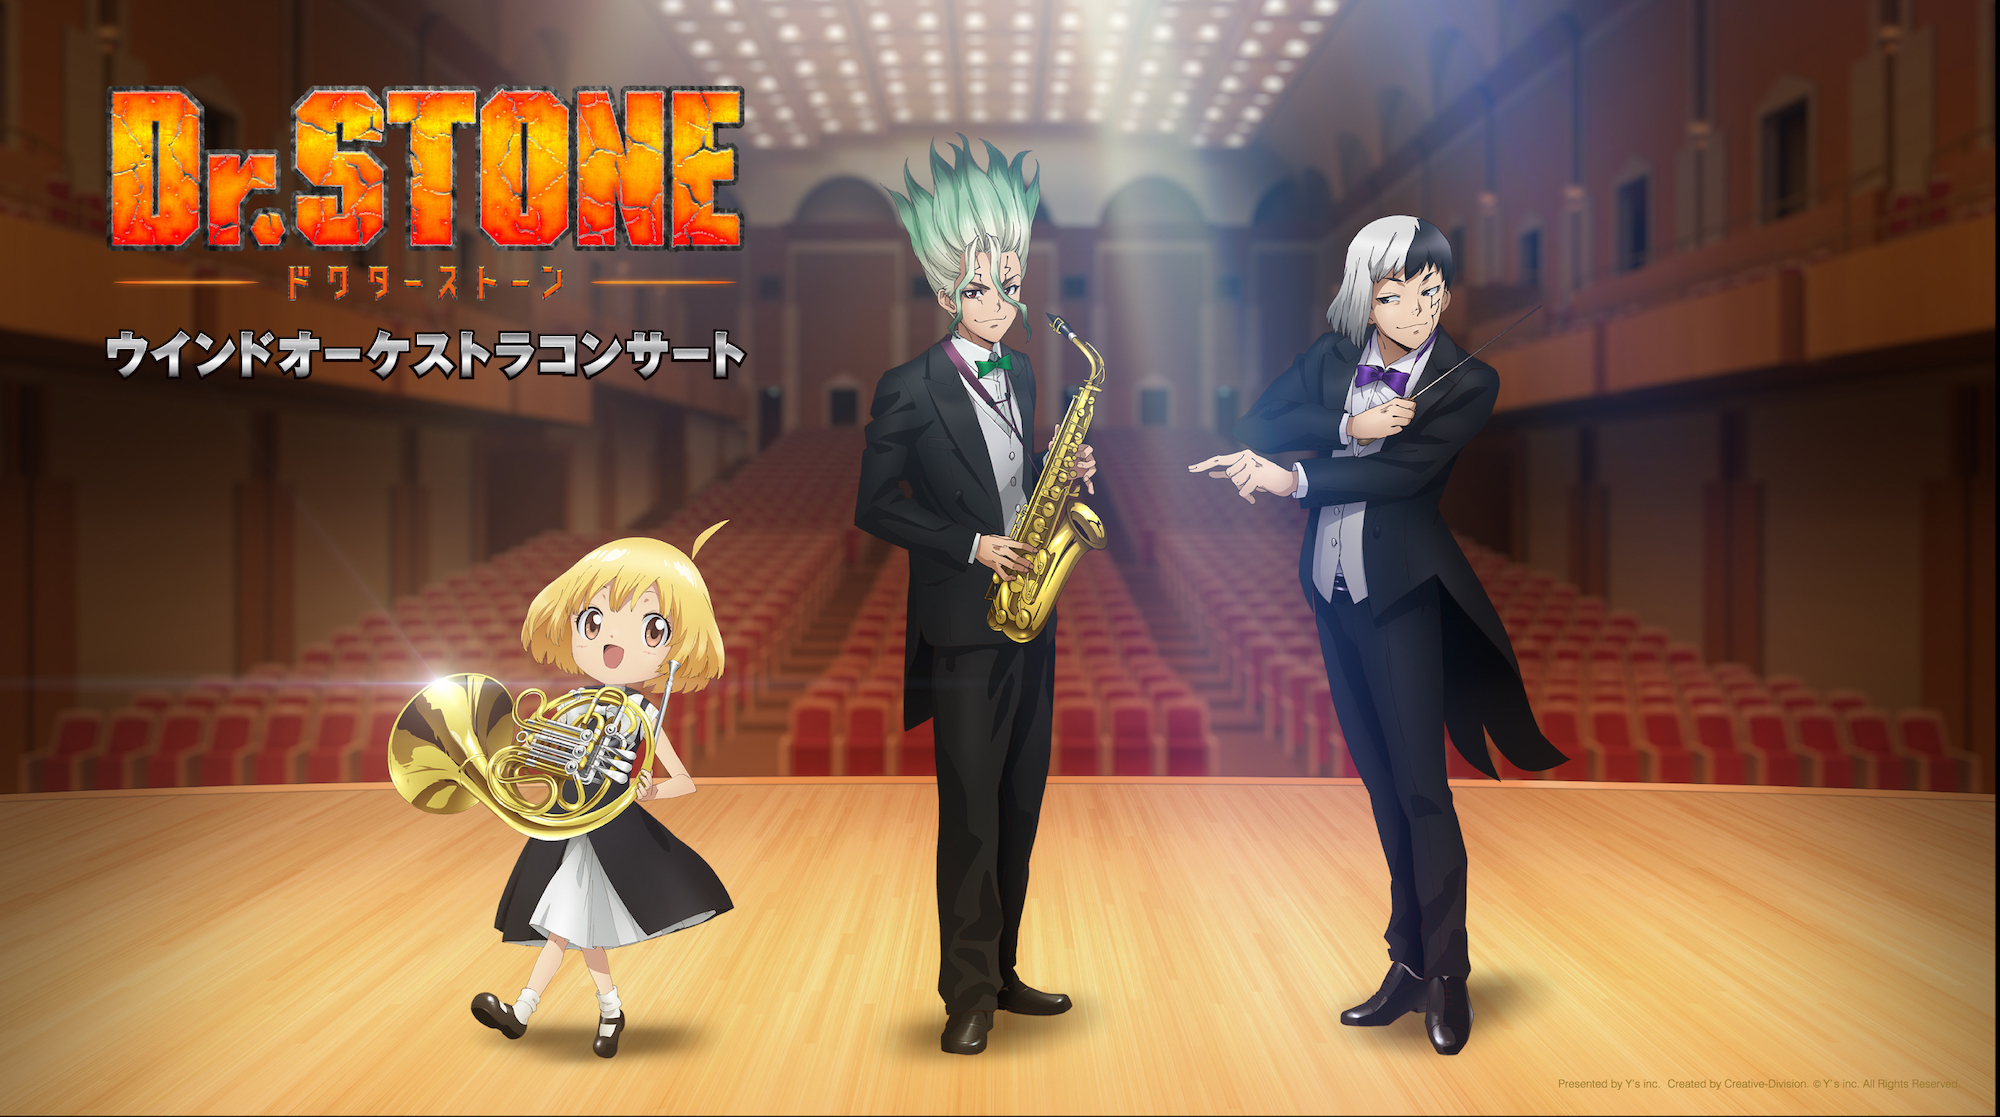 TVアニメ『Dr.STONE』ウインドオーケストラコンサート東京で初開催決定